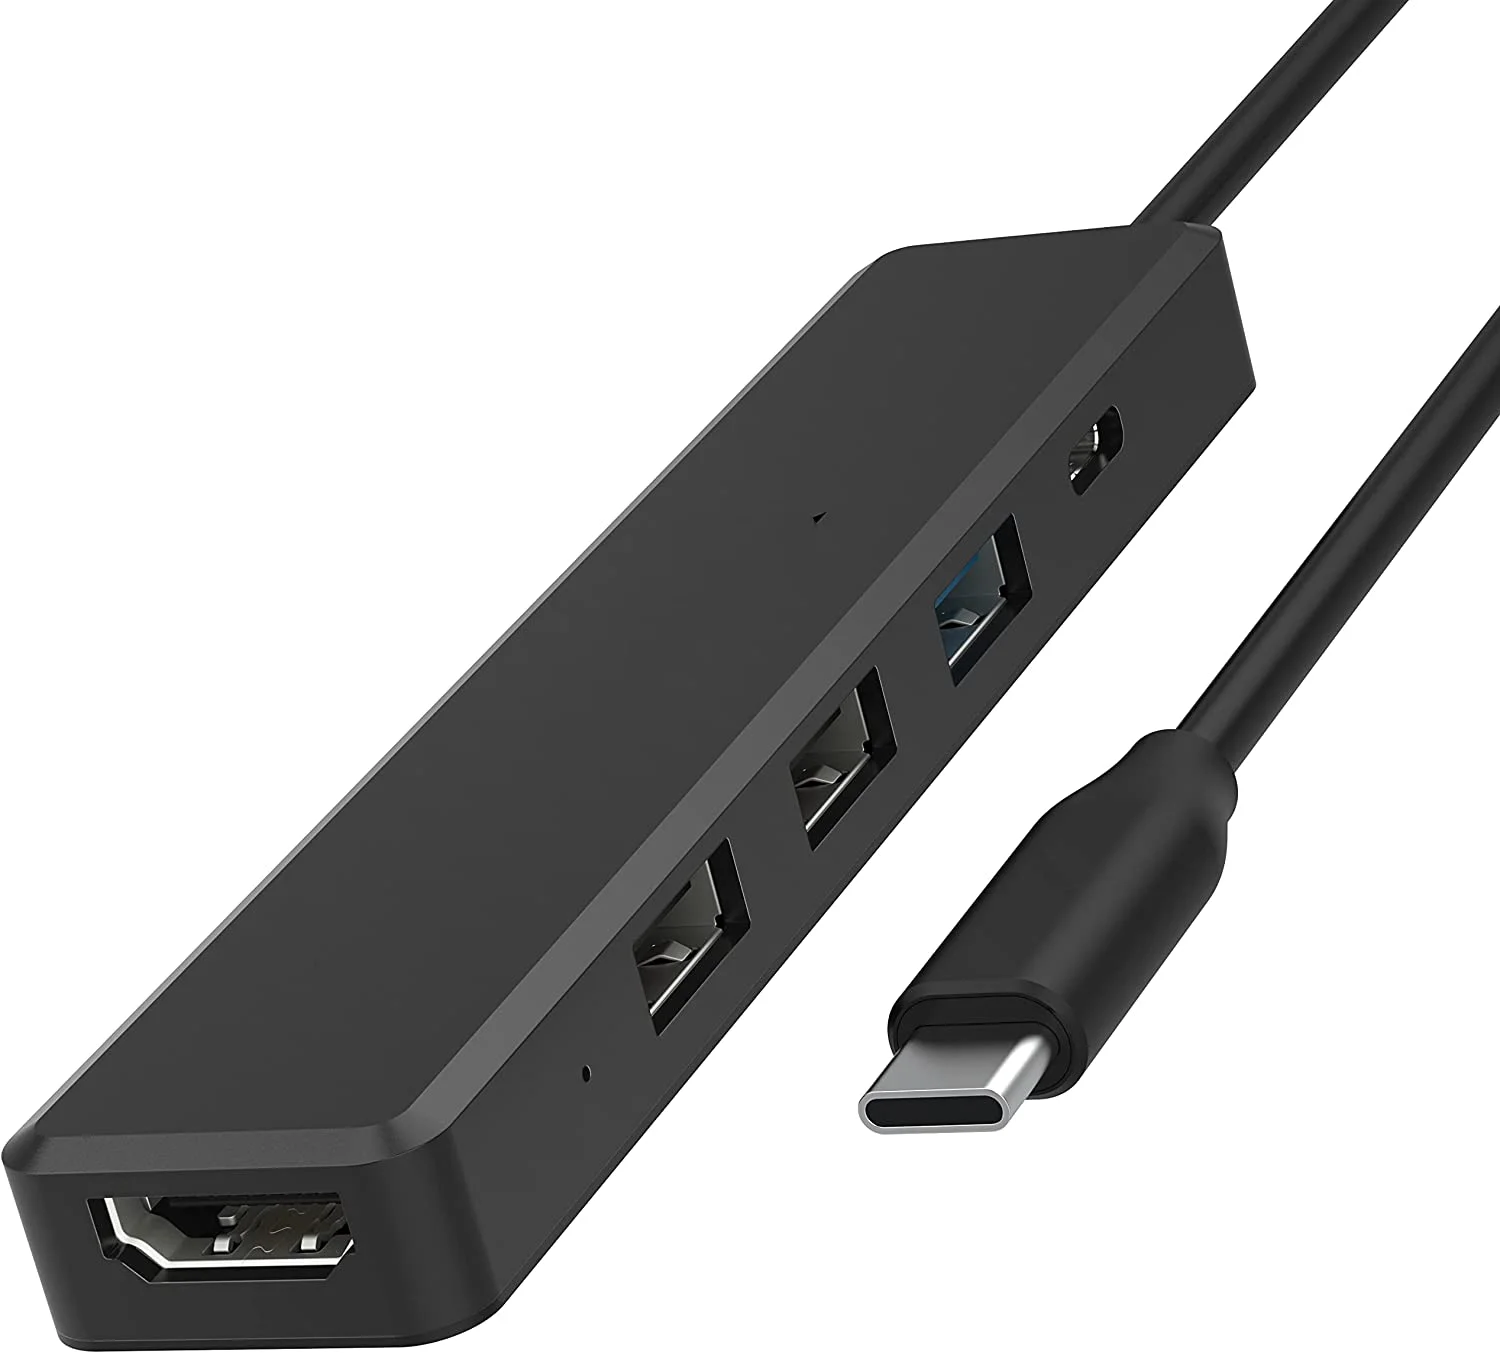 

Hub USB Tipo-C multiportas com HDMI 4k | Fornecimento de energia (60 Watts) | 1 entrada USB 3.0 | 2 entrada USB 2.0 (HB-TC5P)